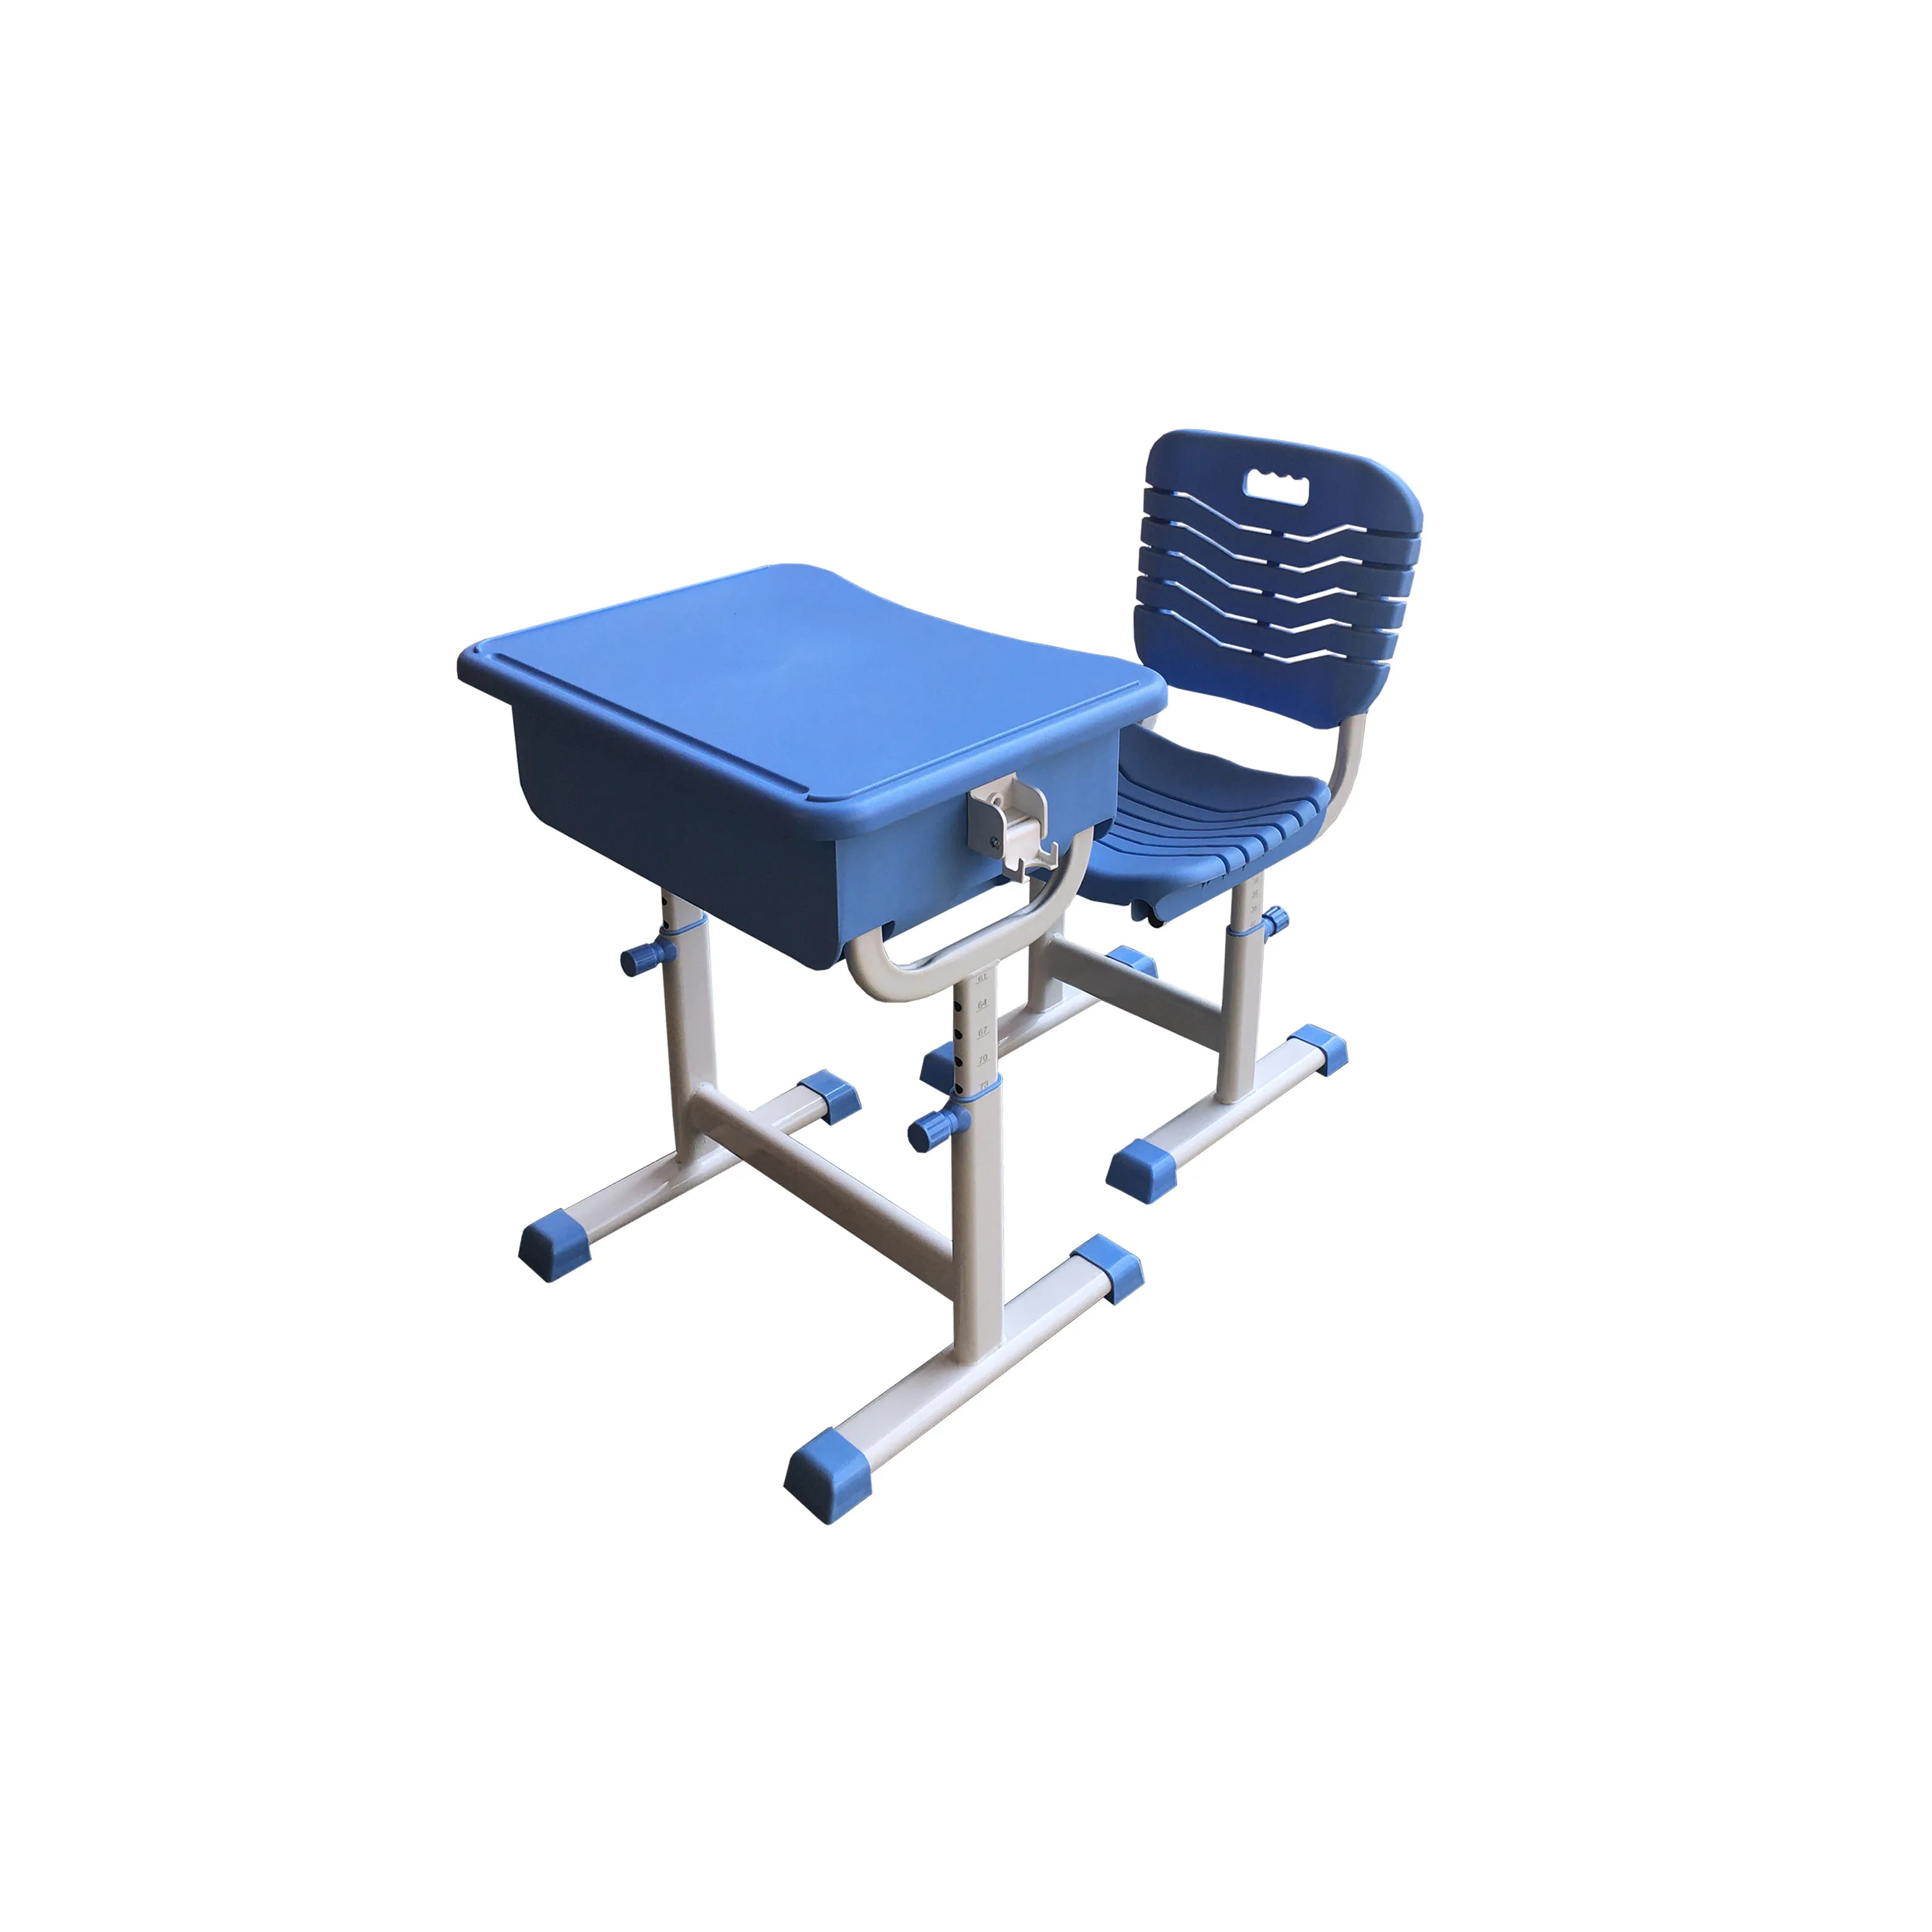 Поставщики школьных столов, популярный пластиковый стол для студентов, стул, школьное оборудование Furnature, используется для классной мебели, учебный стол